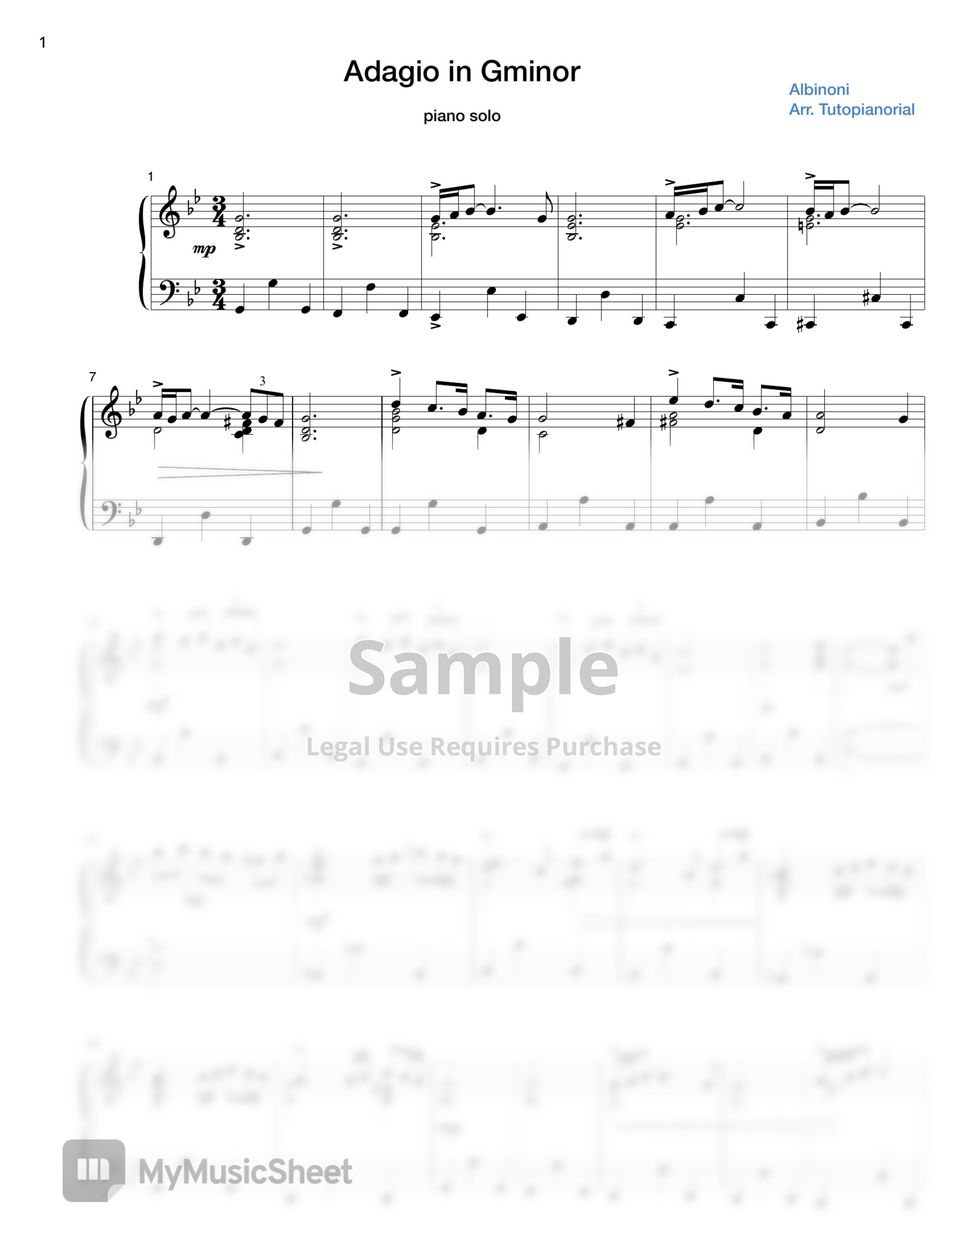 Albinoni - Adagio (Piano Solo) by Tutopianorial